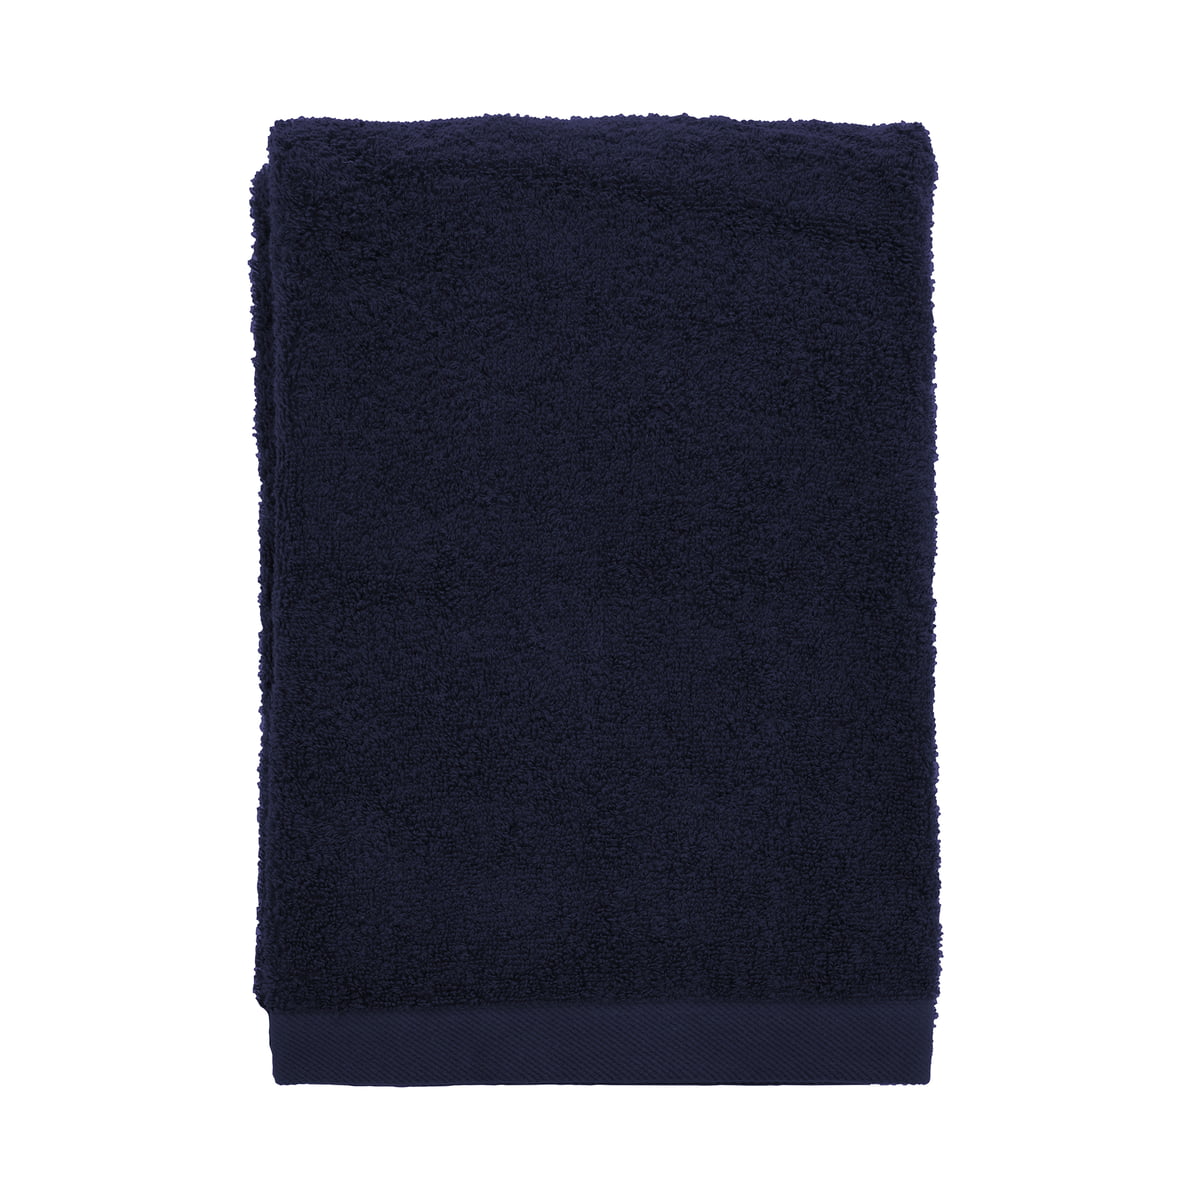 södahl - comfort serviette de bain, 70 x 140 cm, bleu marine